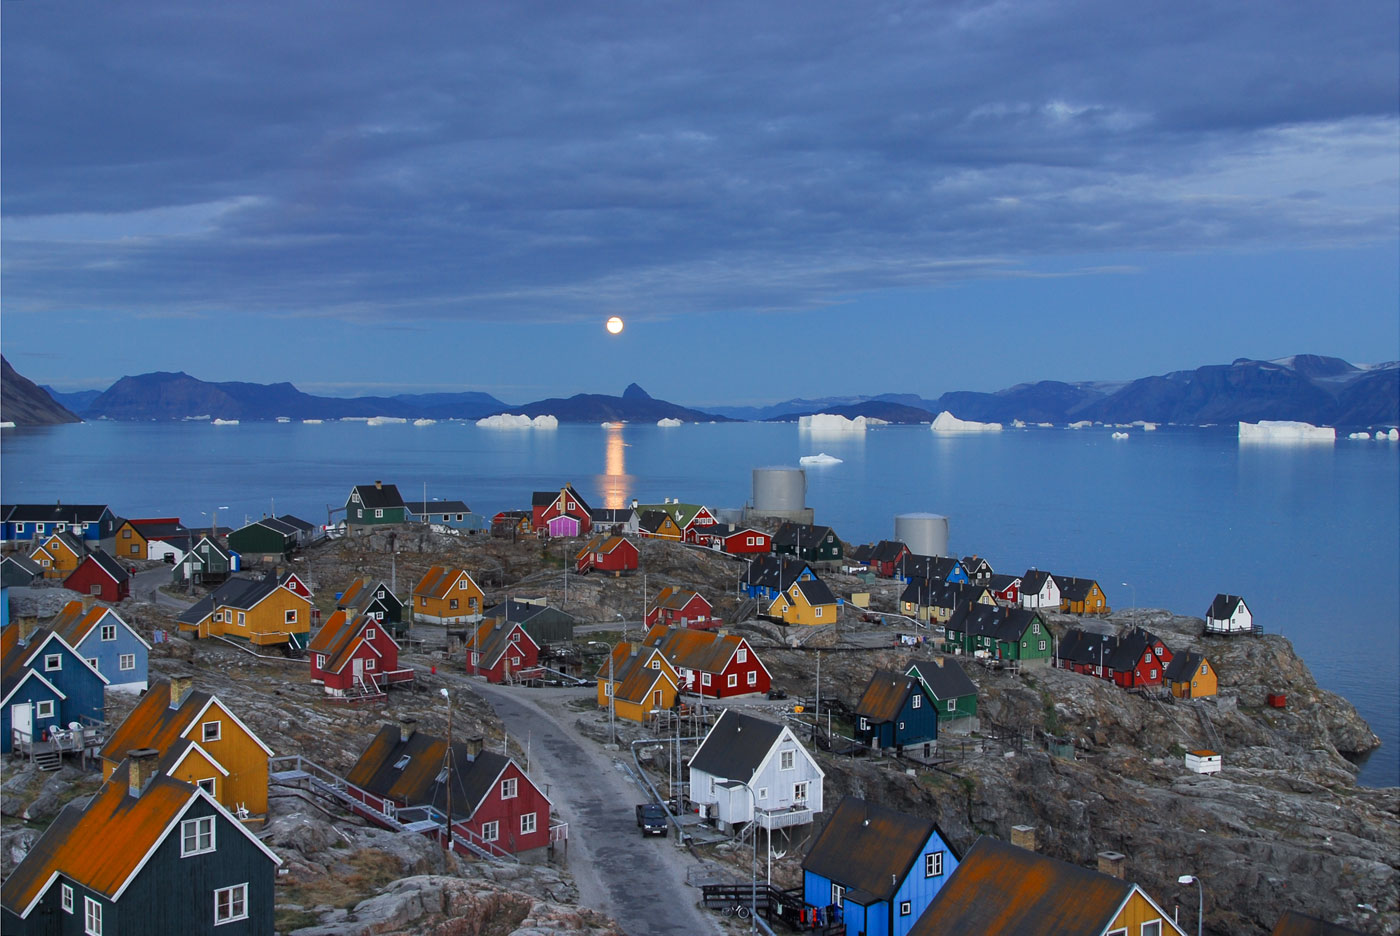 Moonrise over Uummannaq, 2007